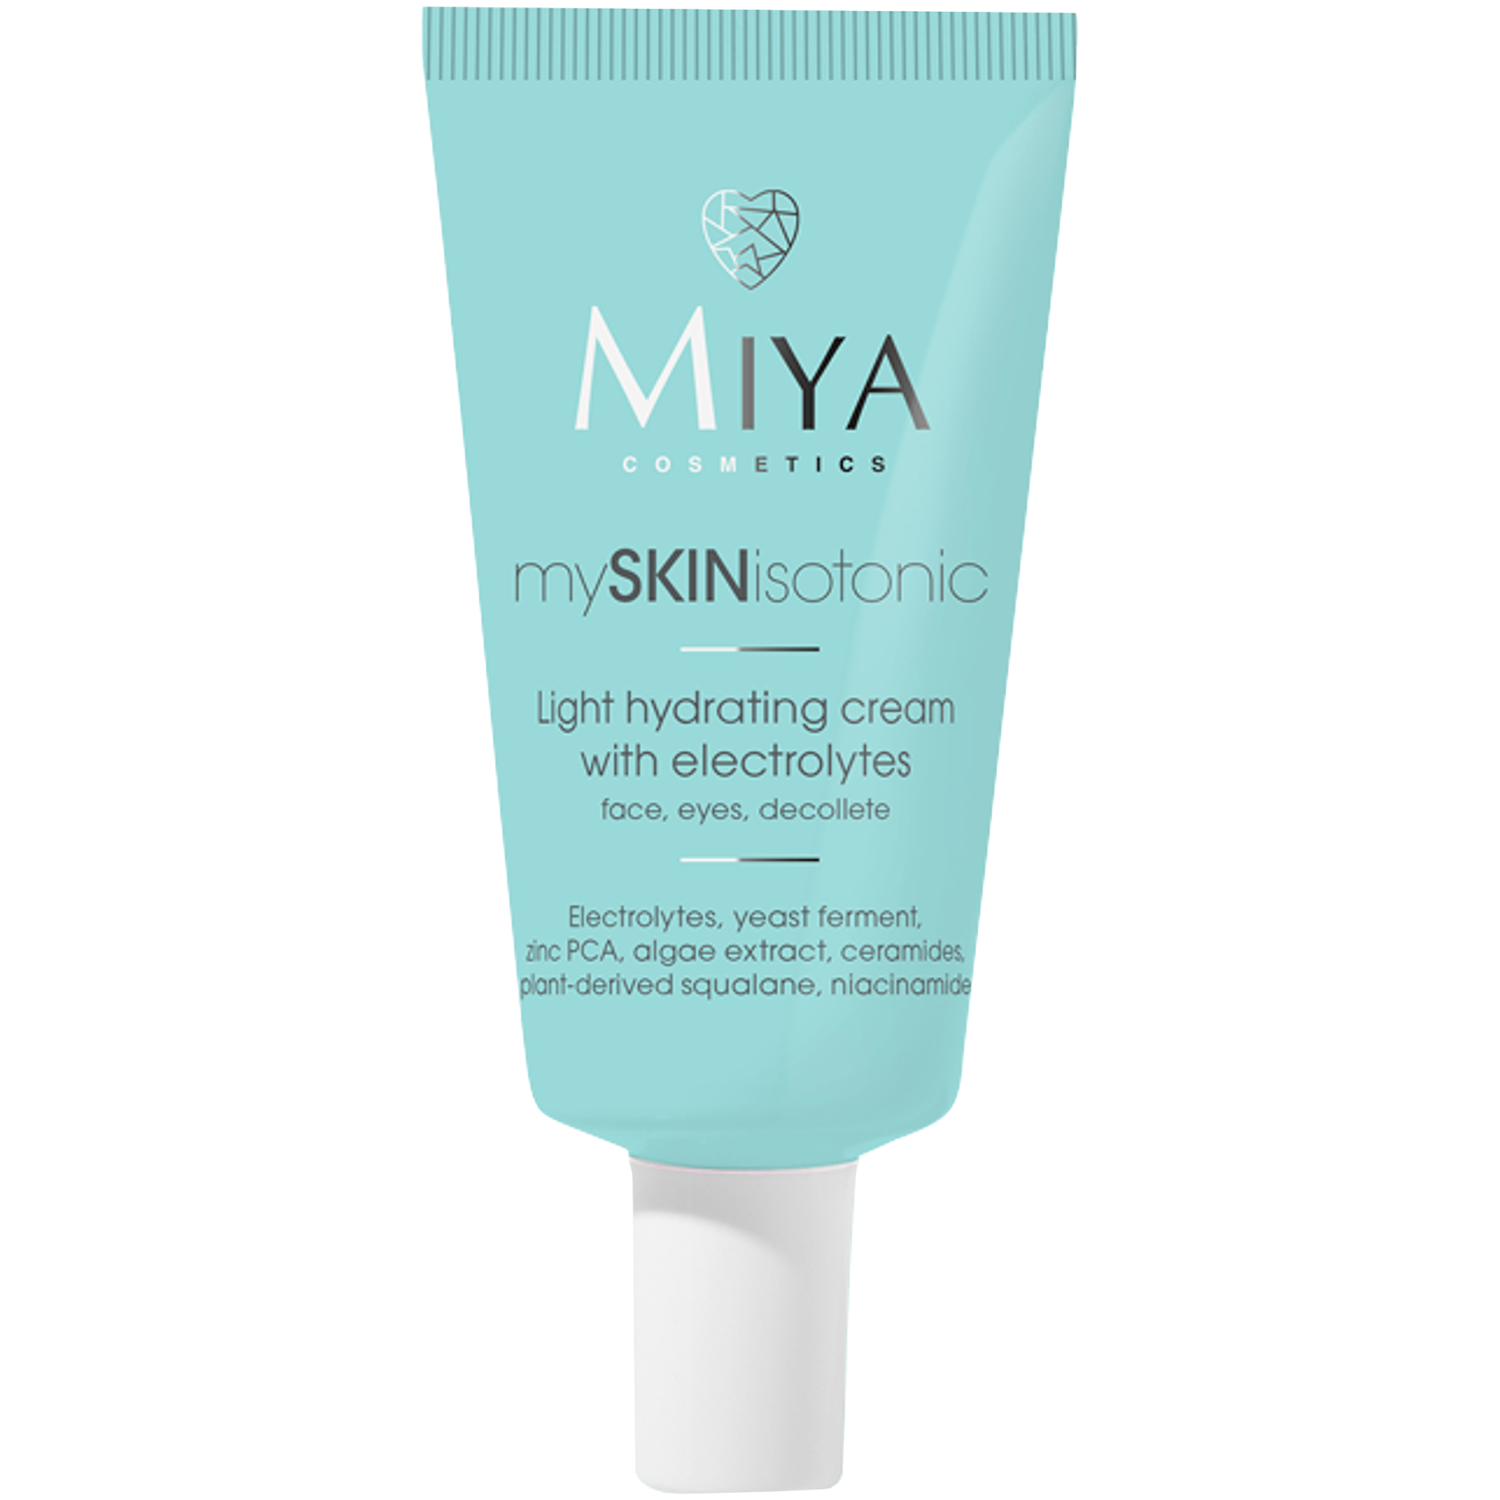 Легкий увлажняющий крем с электролитами для лица Miya Cosmetics Myskinisotonic, 40 мл крем для лица kora крем увлажняющий для жирной и комбинированной кожи